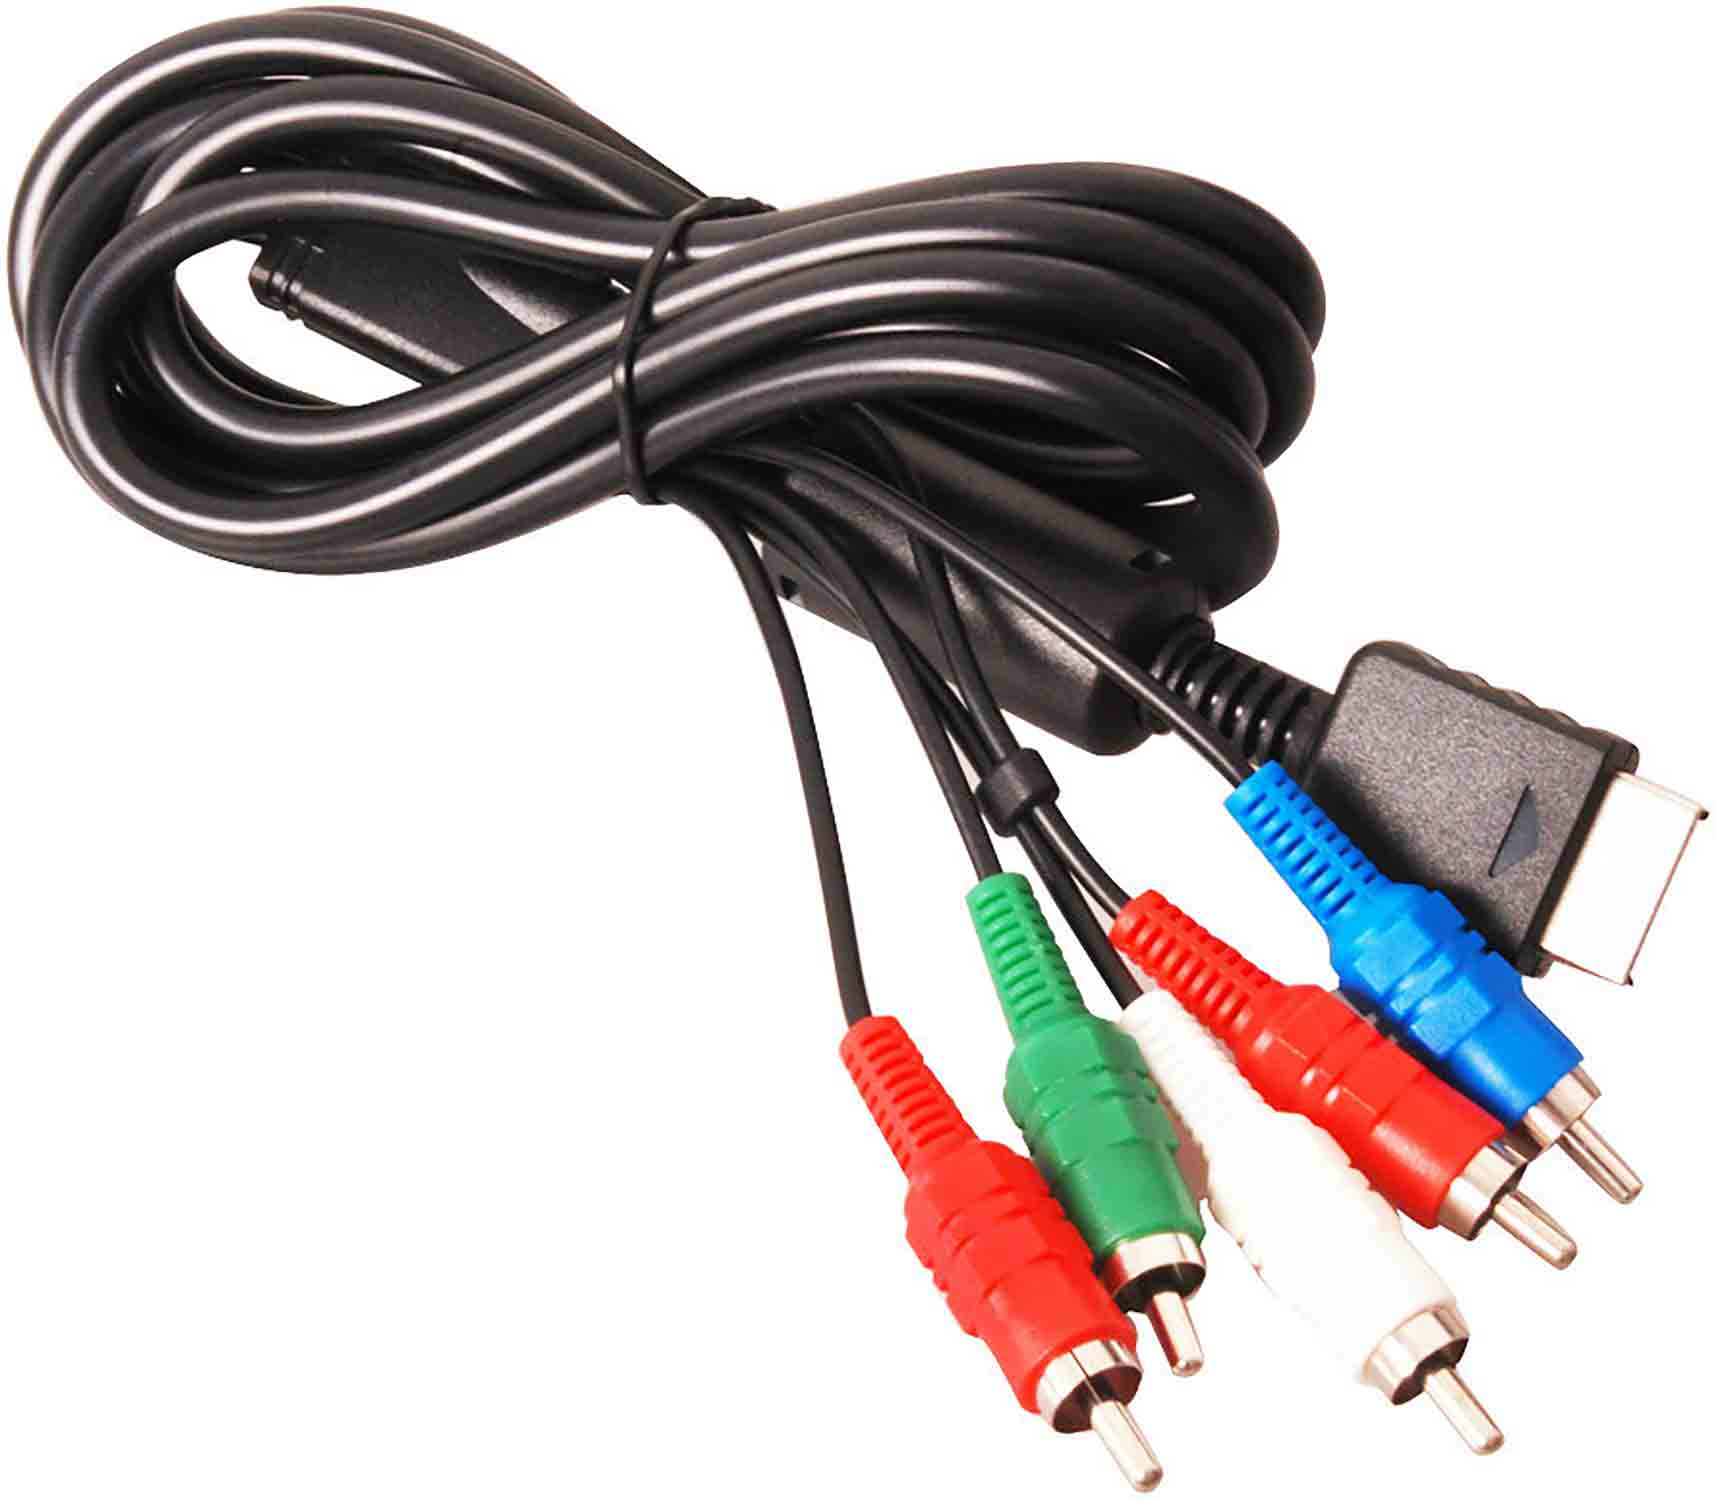 AV kabel pro PS2 a PS3 komponentní cinch příslušenství